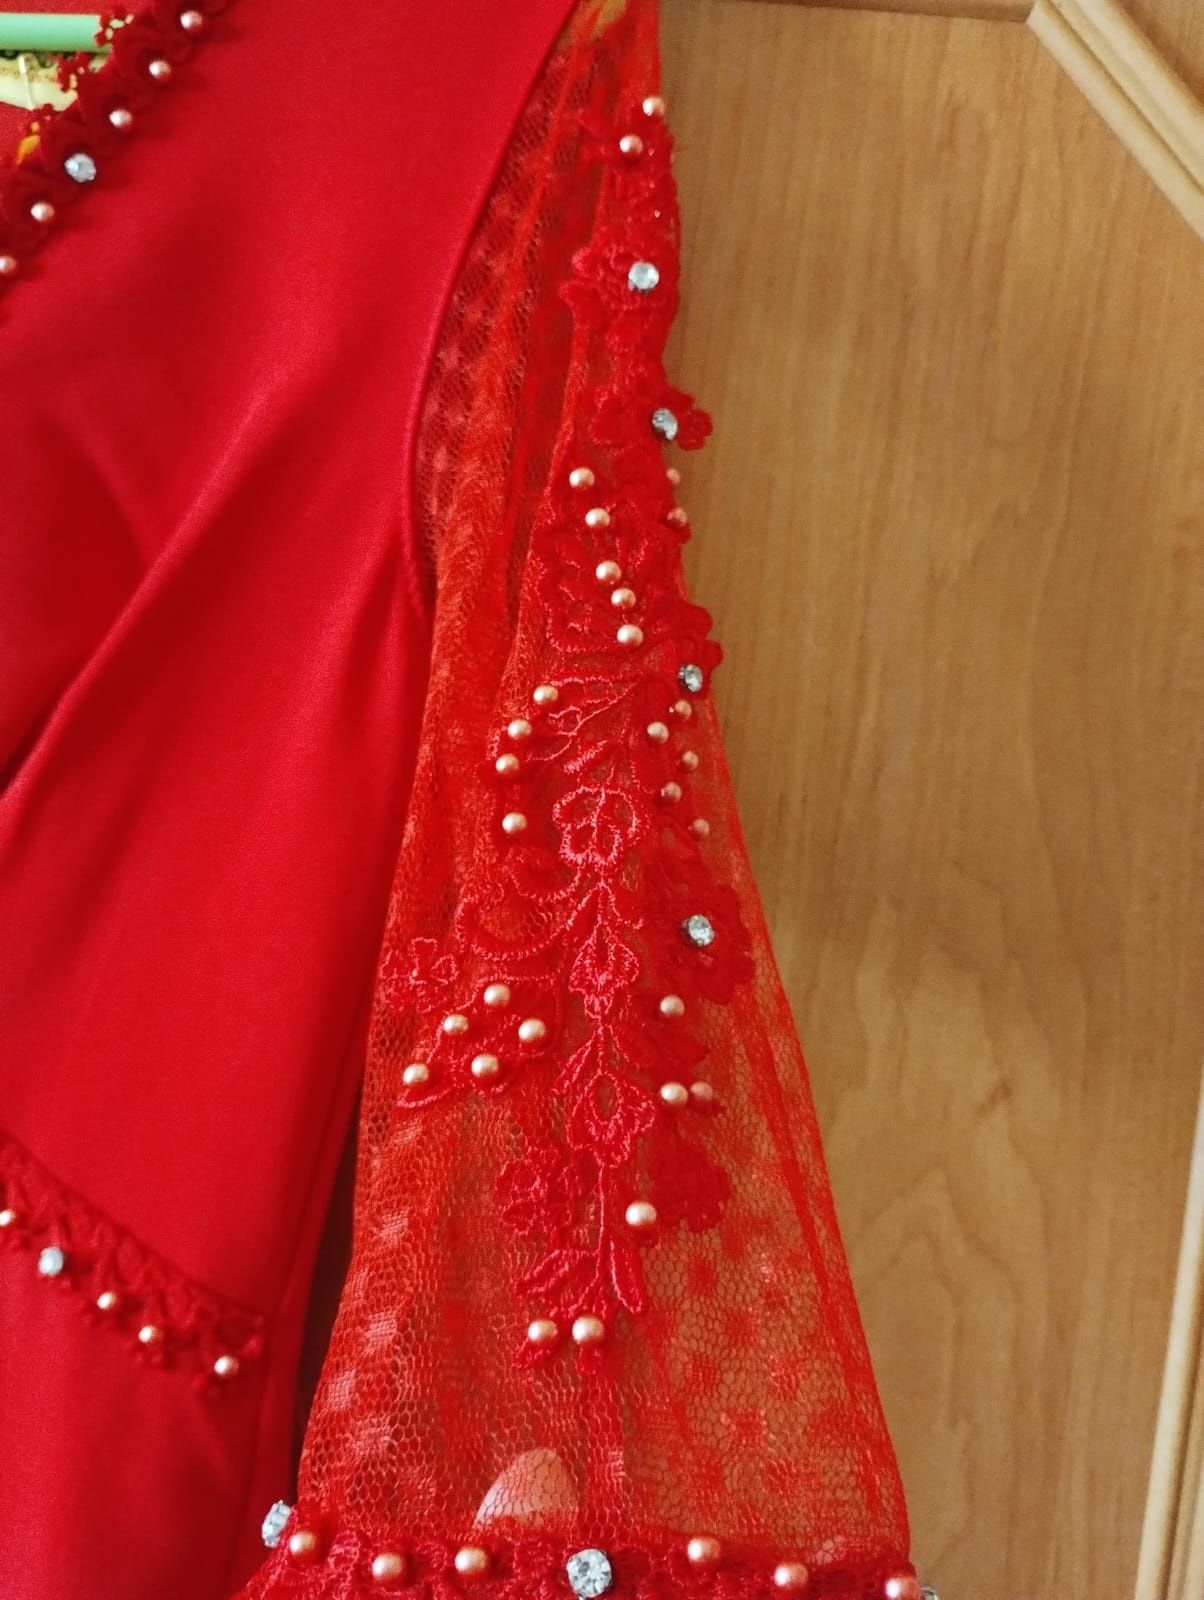 Rochie roșie elegantă